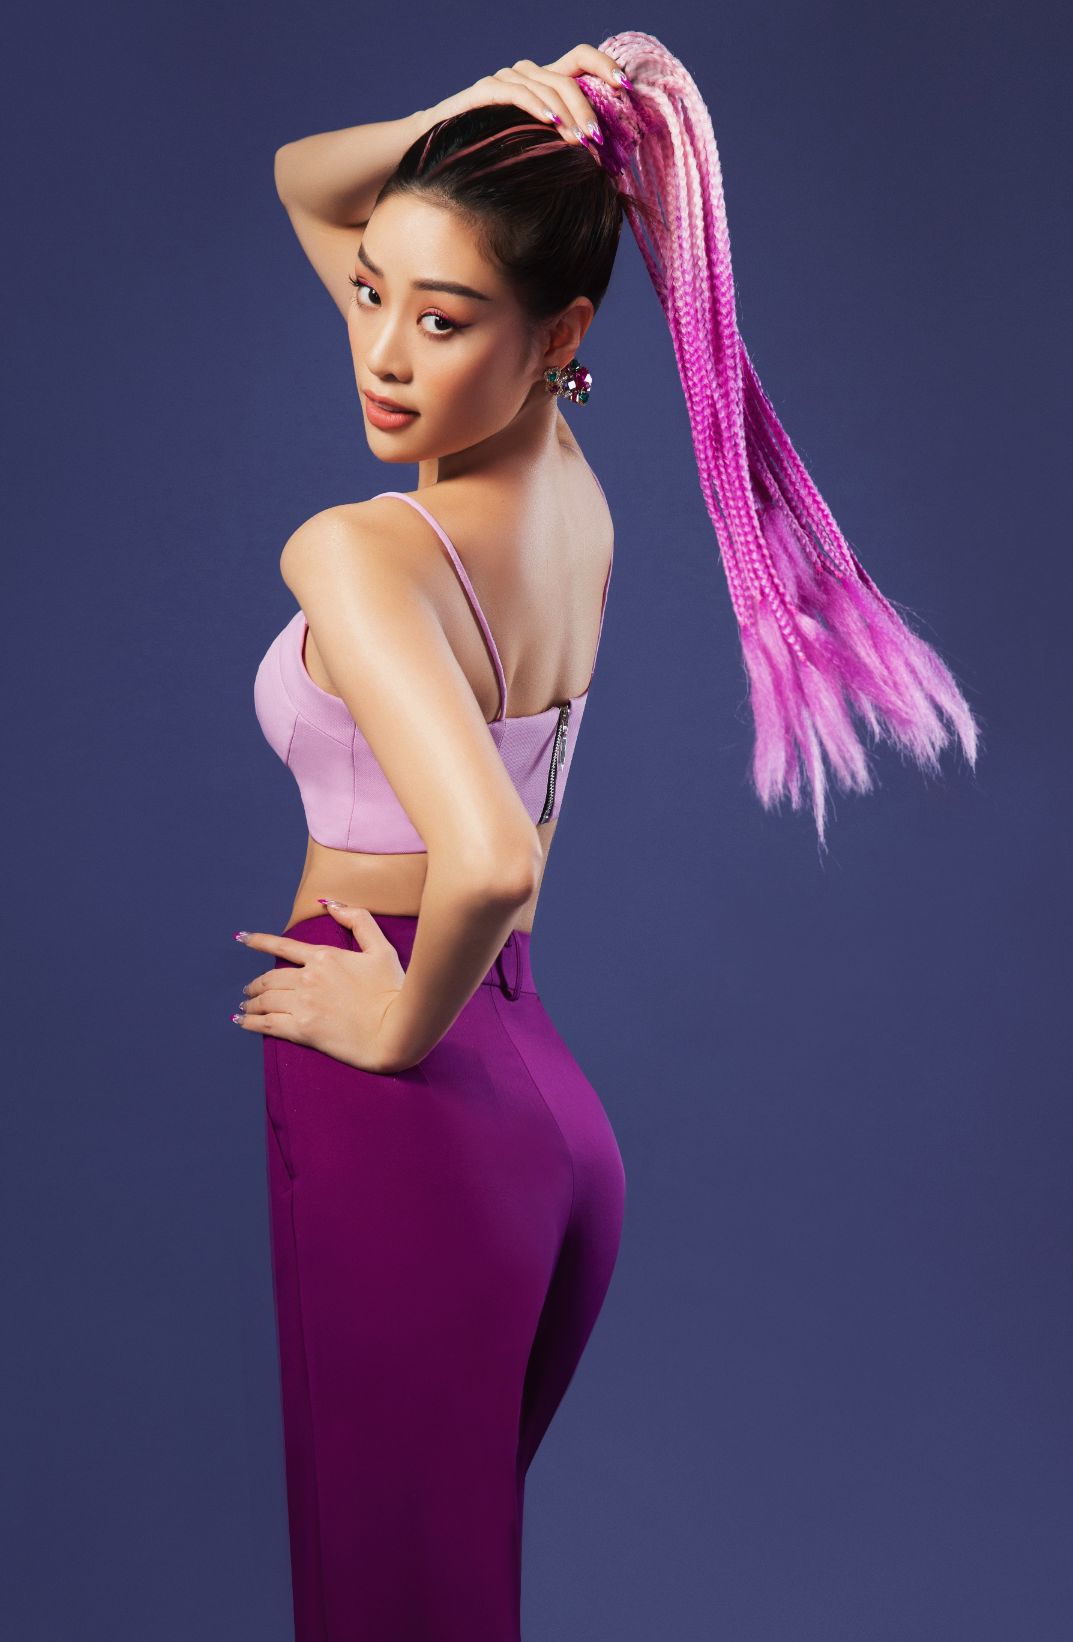 hoa hau khanh van 9 CEO   Hoa hậu Khánh Vân chào tháng 8 với sắc màu rực rỡ